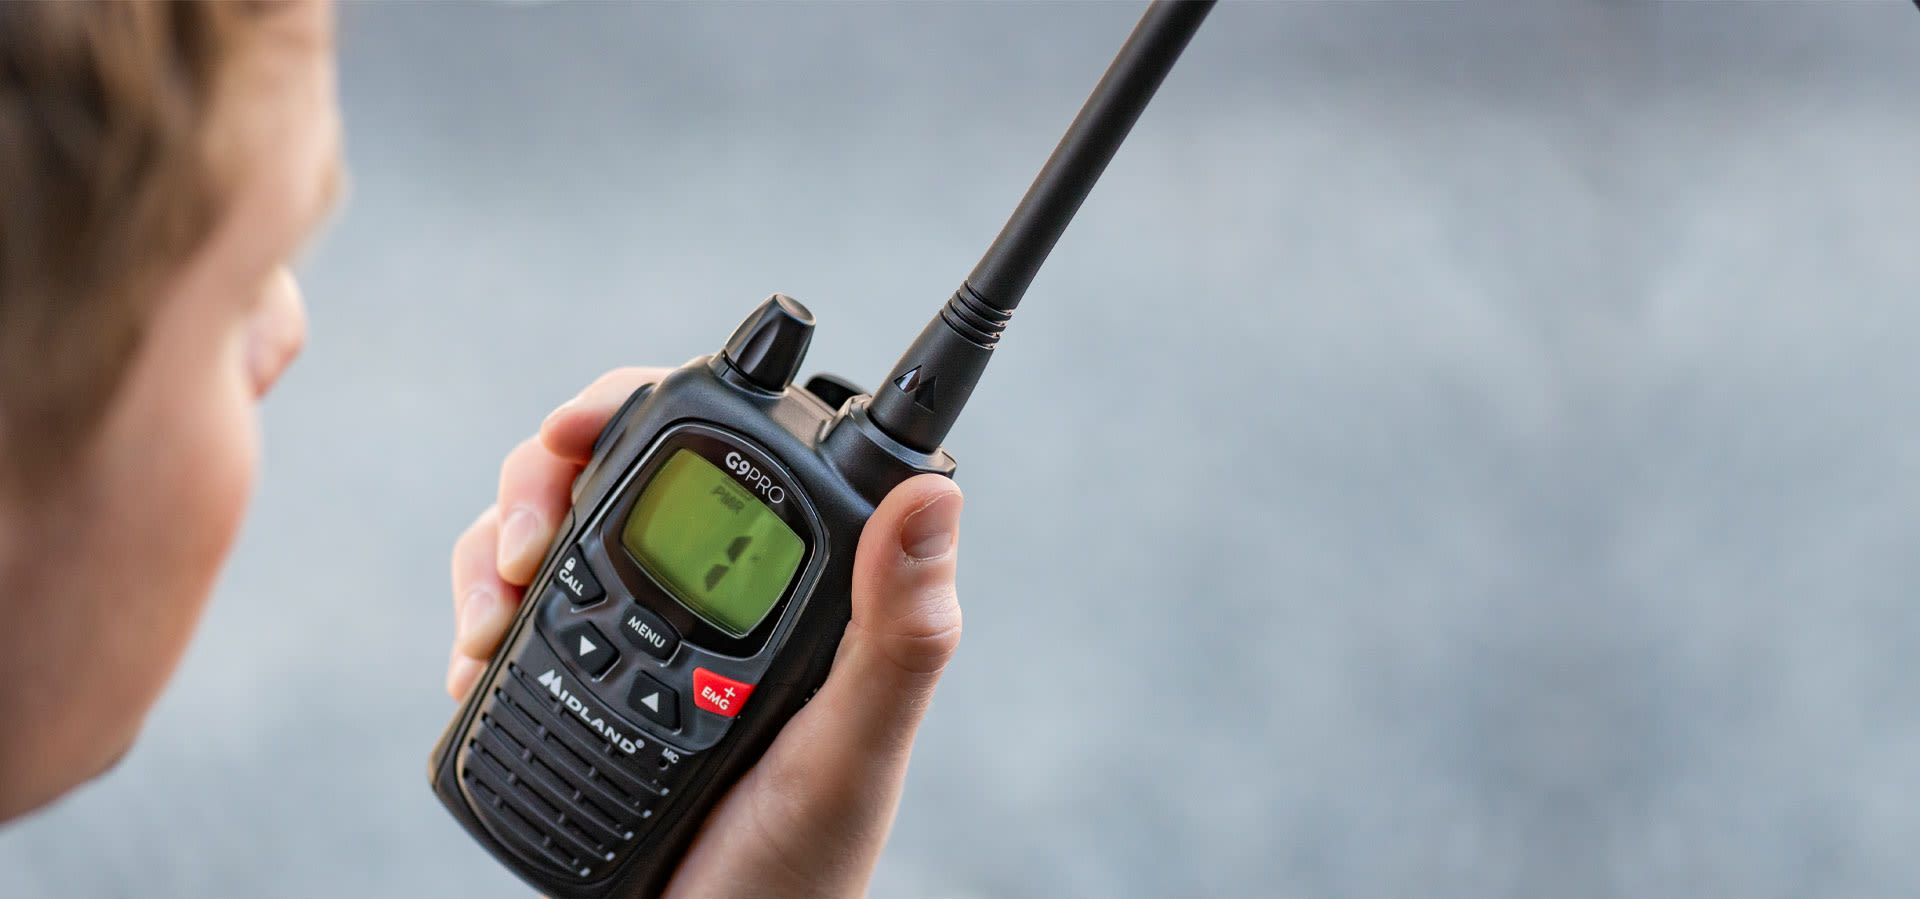 Talkie-walkie MIDLAND G9 PRO noir avec oreillette - Armurerie Pisteurs